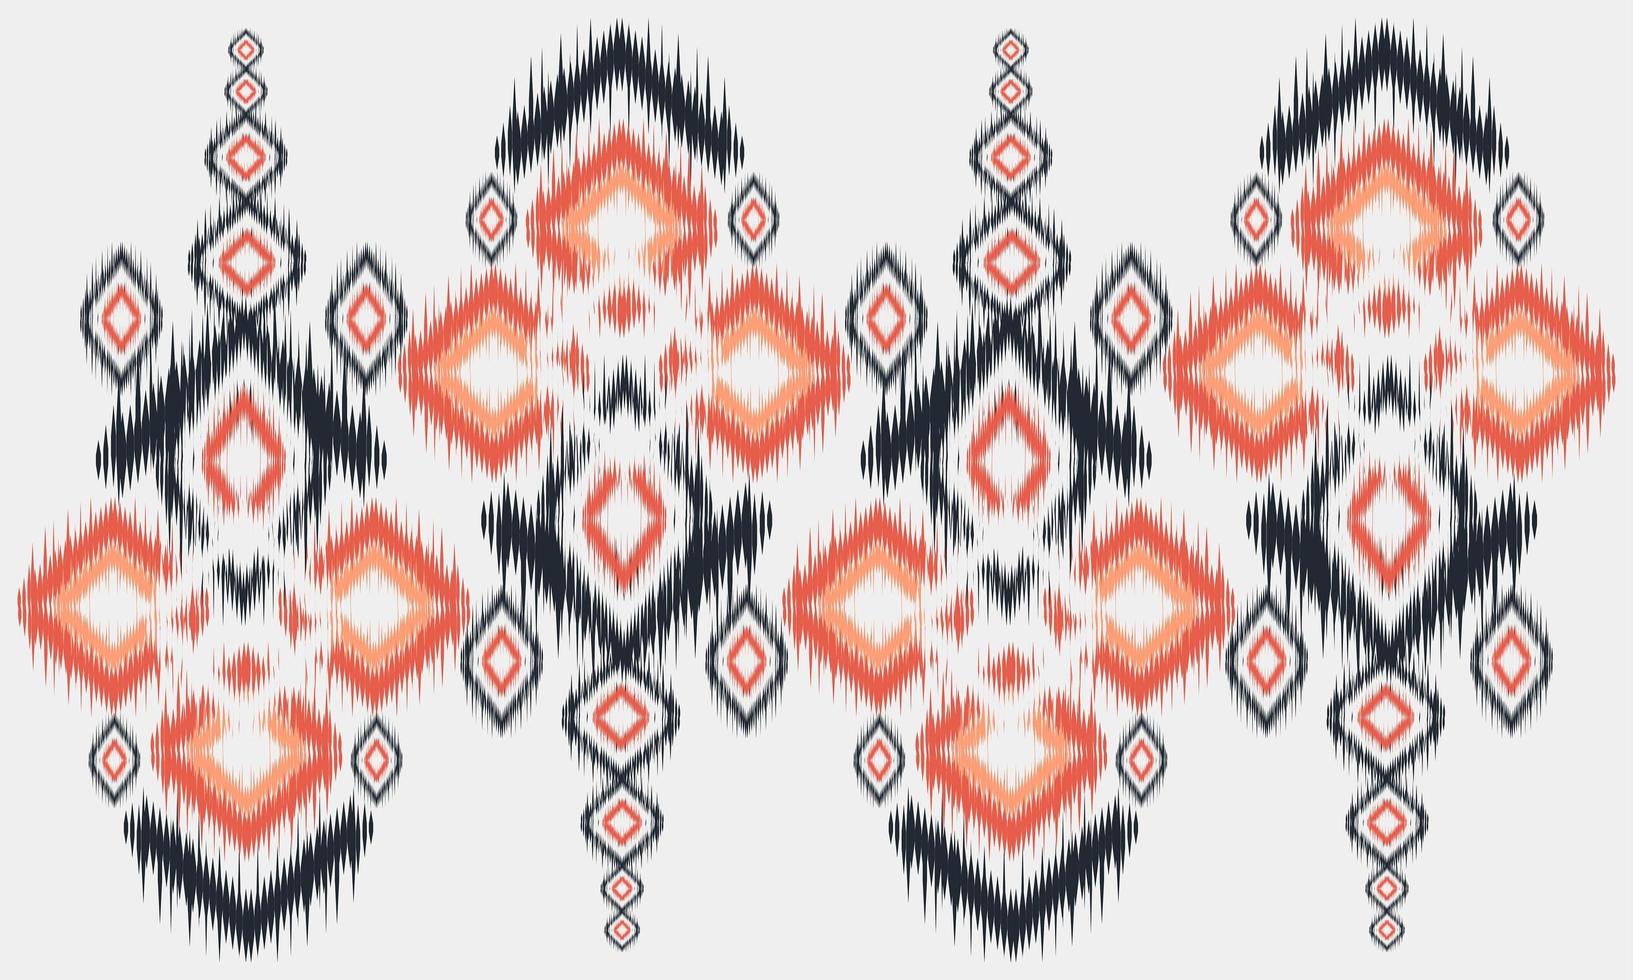 geometrische ethnische Muster orientalisch. nahtloses Muster. Design für Stoff, Vorhang, Hintergrund, Teppich, Tapete, Kleidung, Verpackung, Batik, Stoff, Vektorgrafik. Muster styl vektor